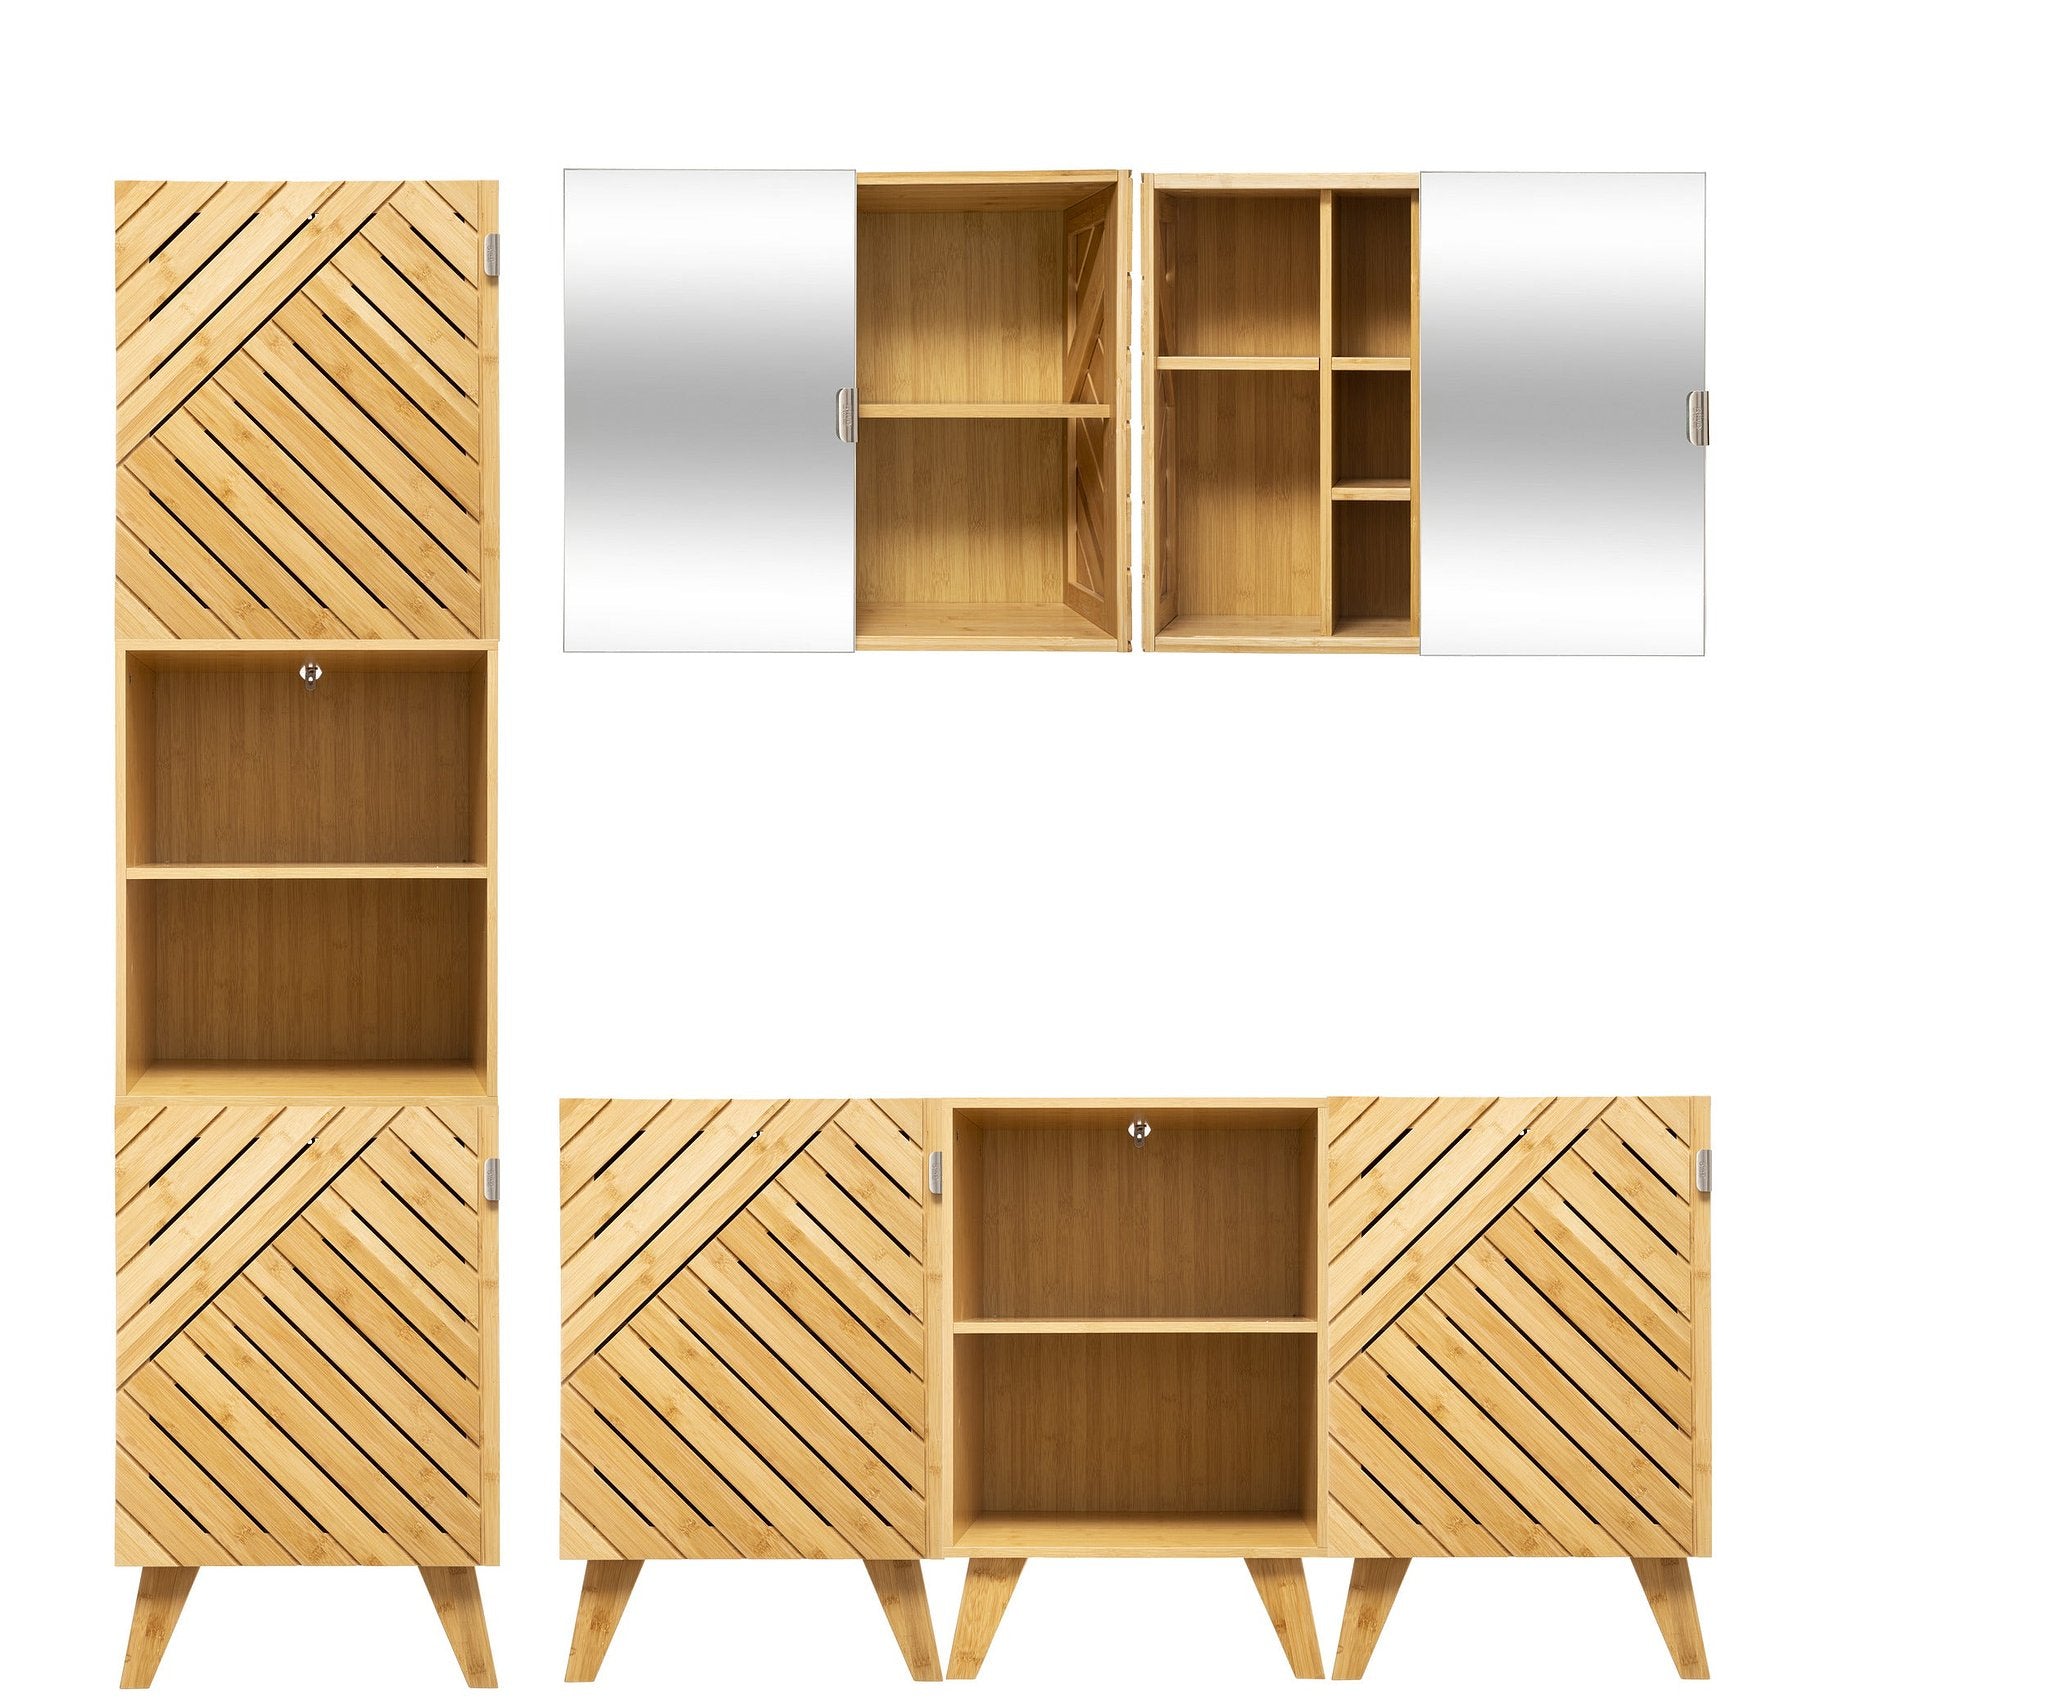 5Five Bamboe Modern Badkamerkast met modulaire spiegel schuifdeur - Ideaal voor elke ruimte, groot o